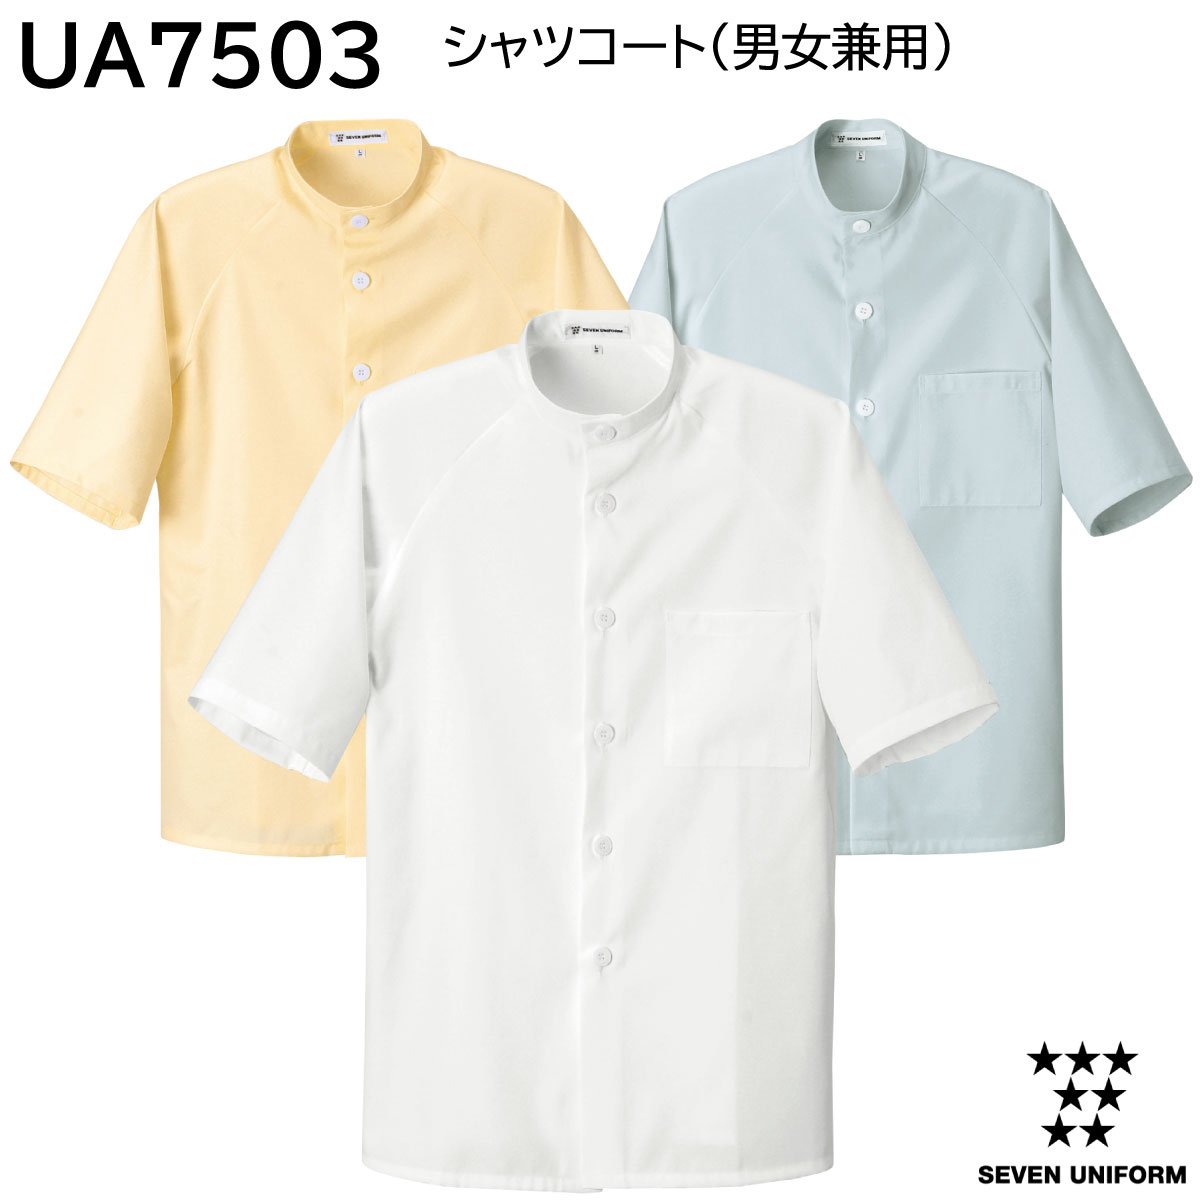 シャツコート 男女兼用 UA7503 SS〜6L セブンユニフォーム SEVEN UNIFORM 3色展開